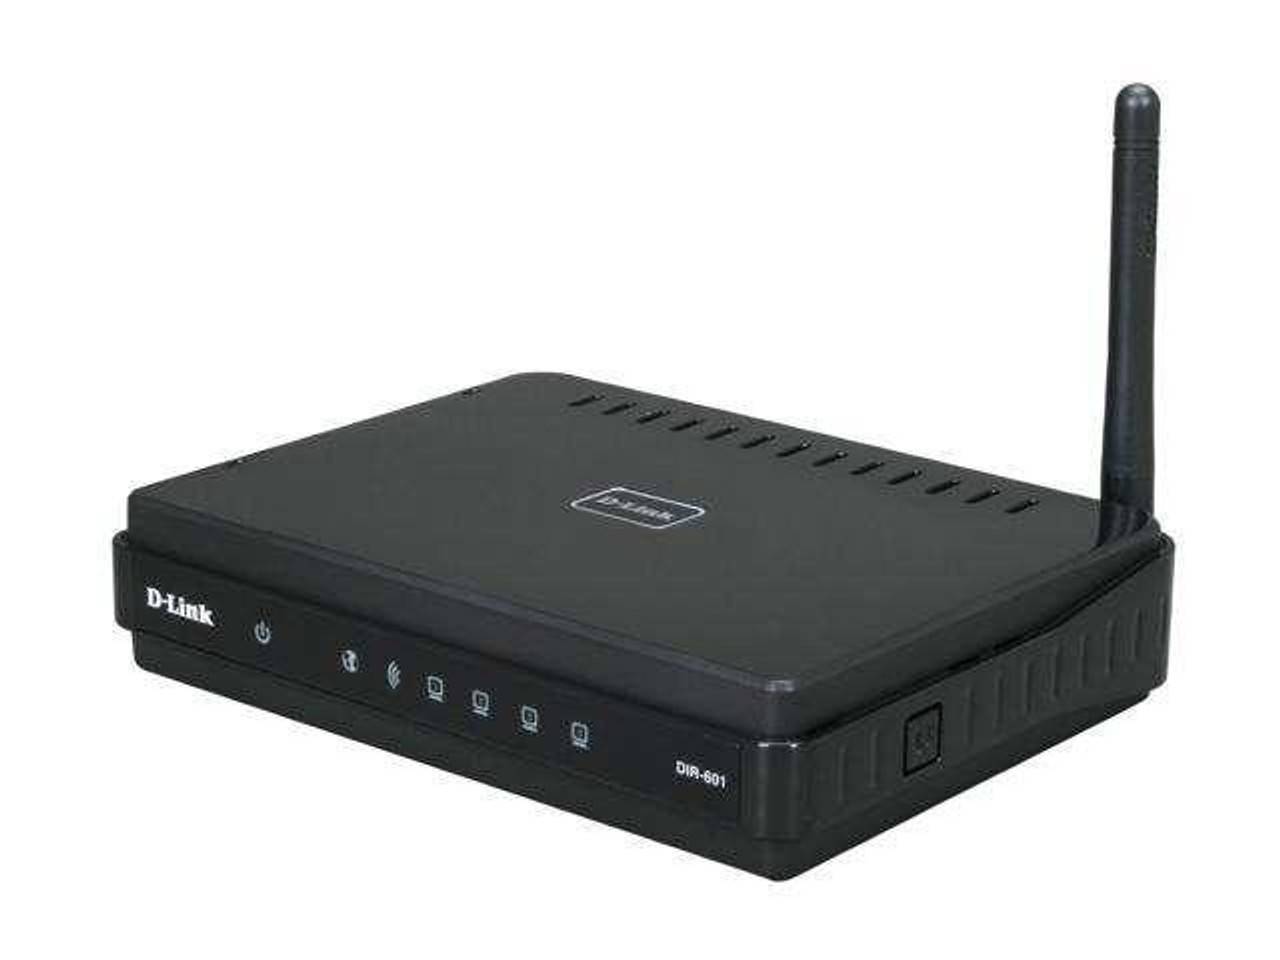 DLDIR601 D-Link Dir-601 Wireless N Home Router 4 x 10/100Base-TX Network LAN, 1 x 10/100Base-TX Network WAN IEEE 802.11n (draft) 150Mbps (Refurbished)